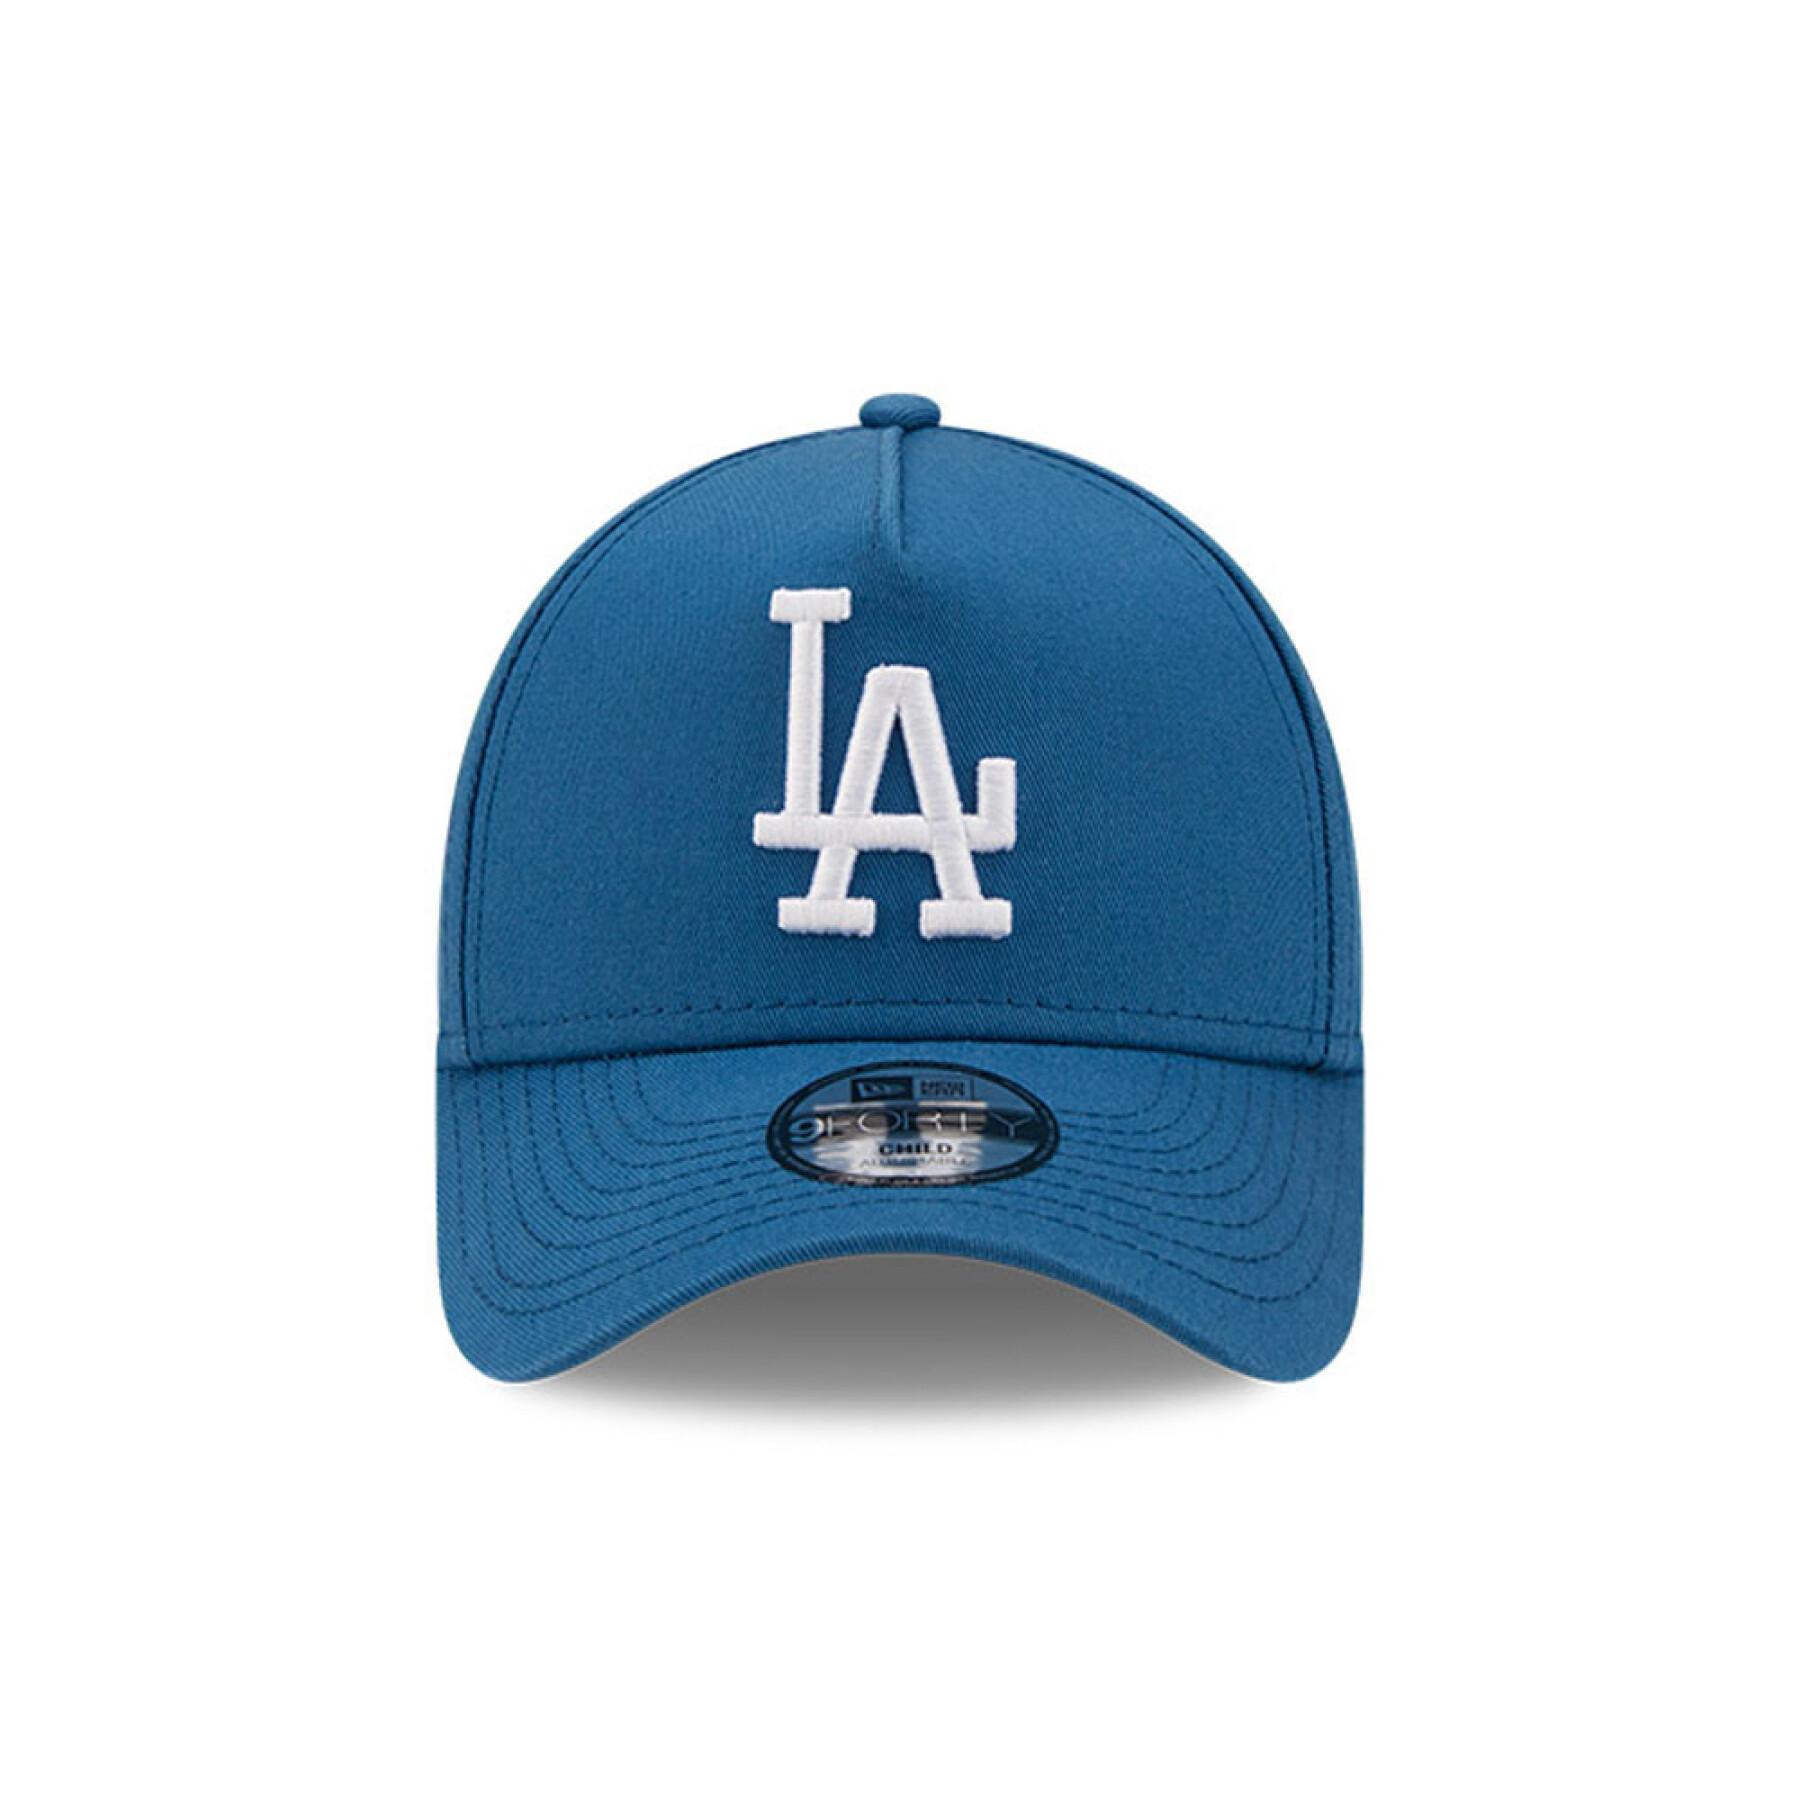 Berretto per bambini Los Angeles Dodgers colour essential